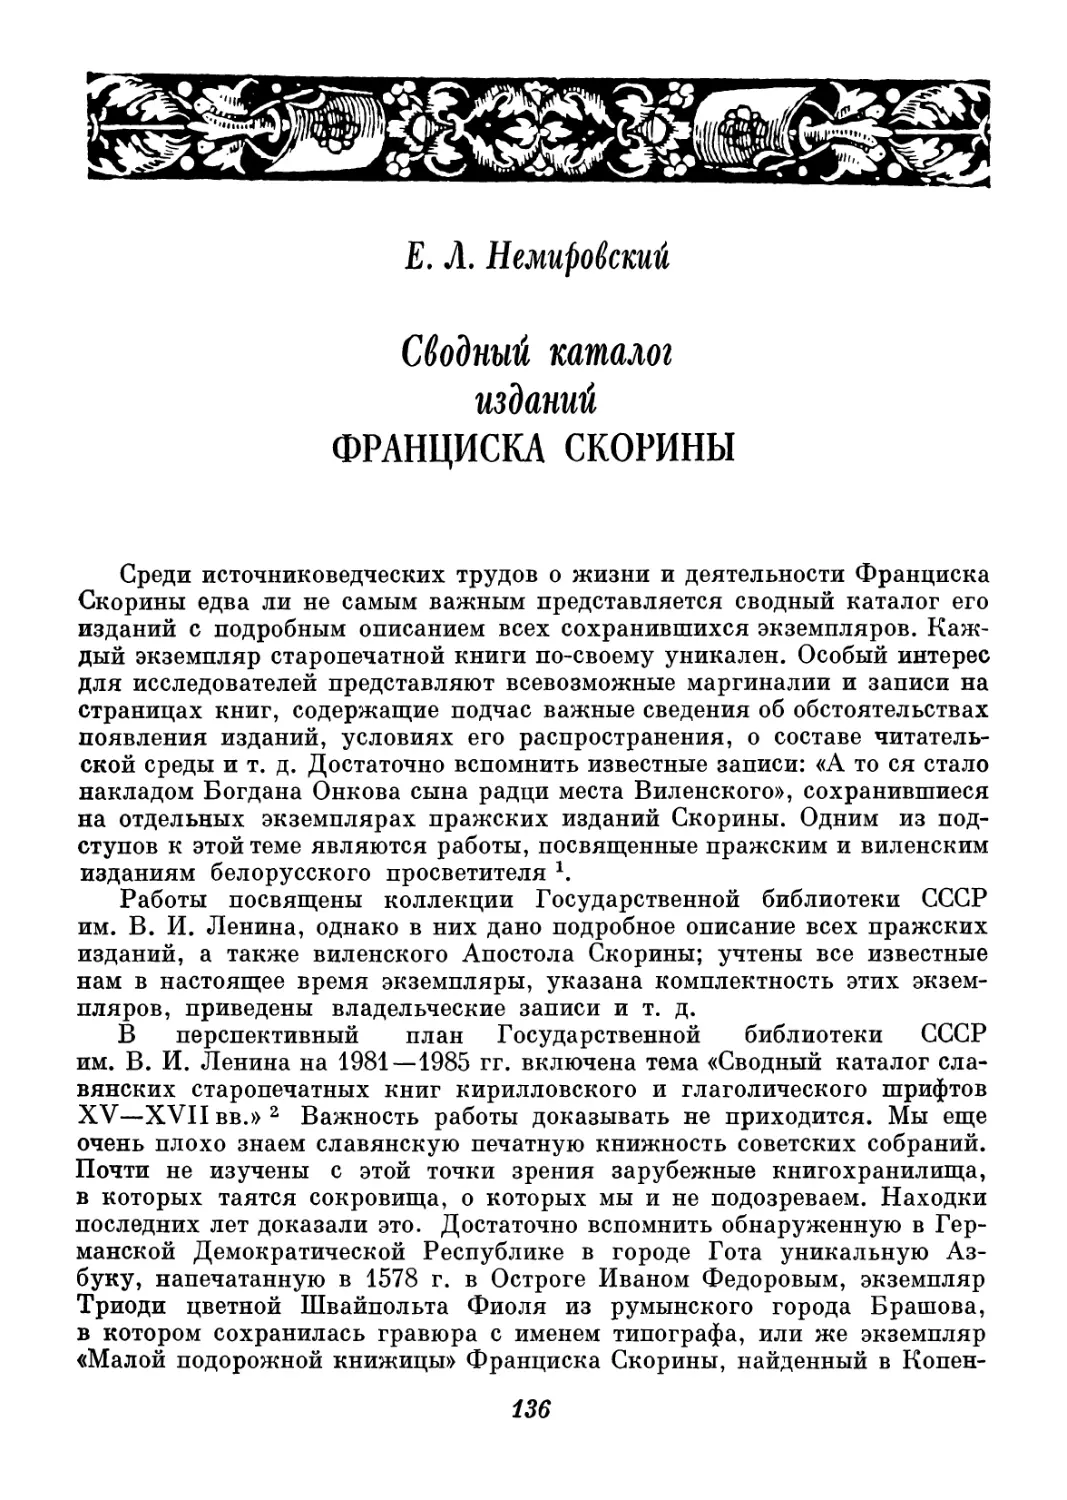 Е. Л. Немировский - Сводный каталог изданий Ф. Скорины